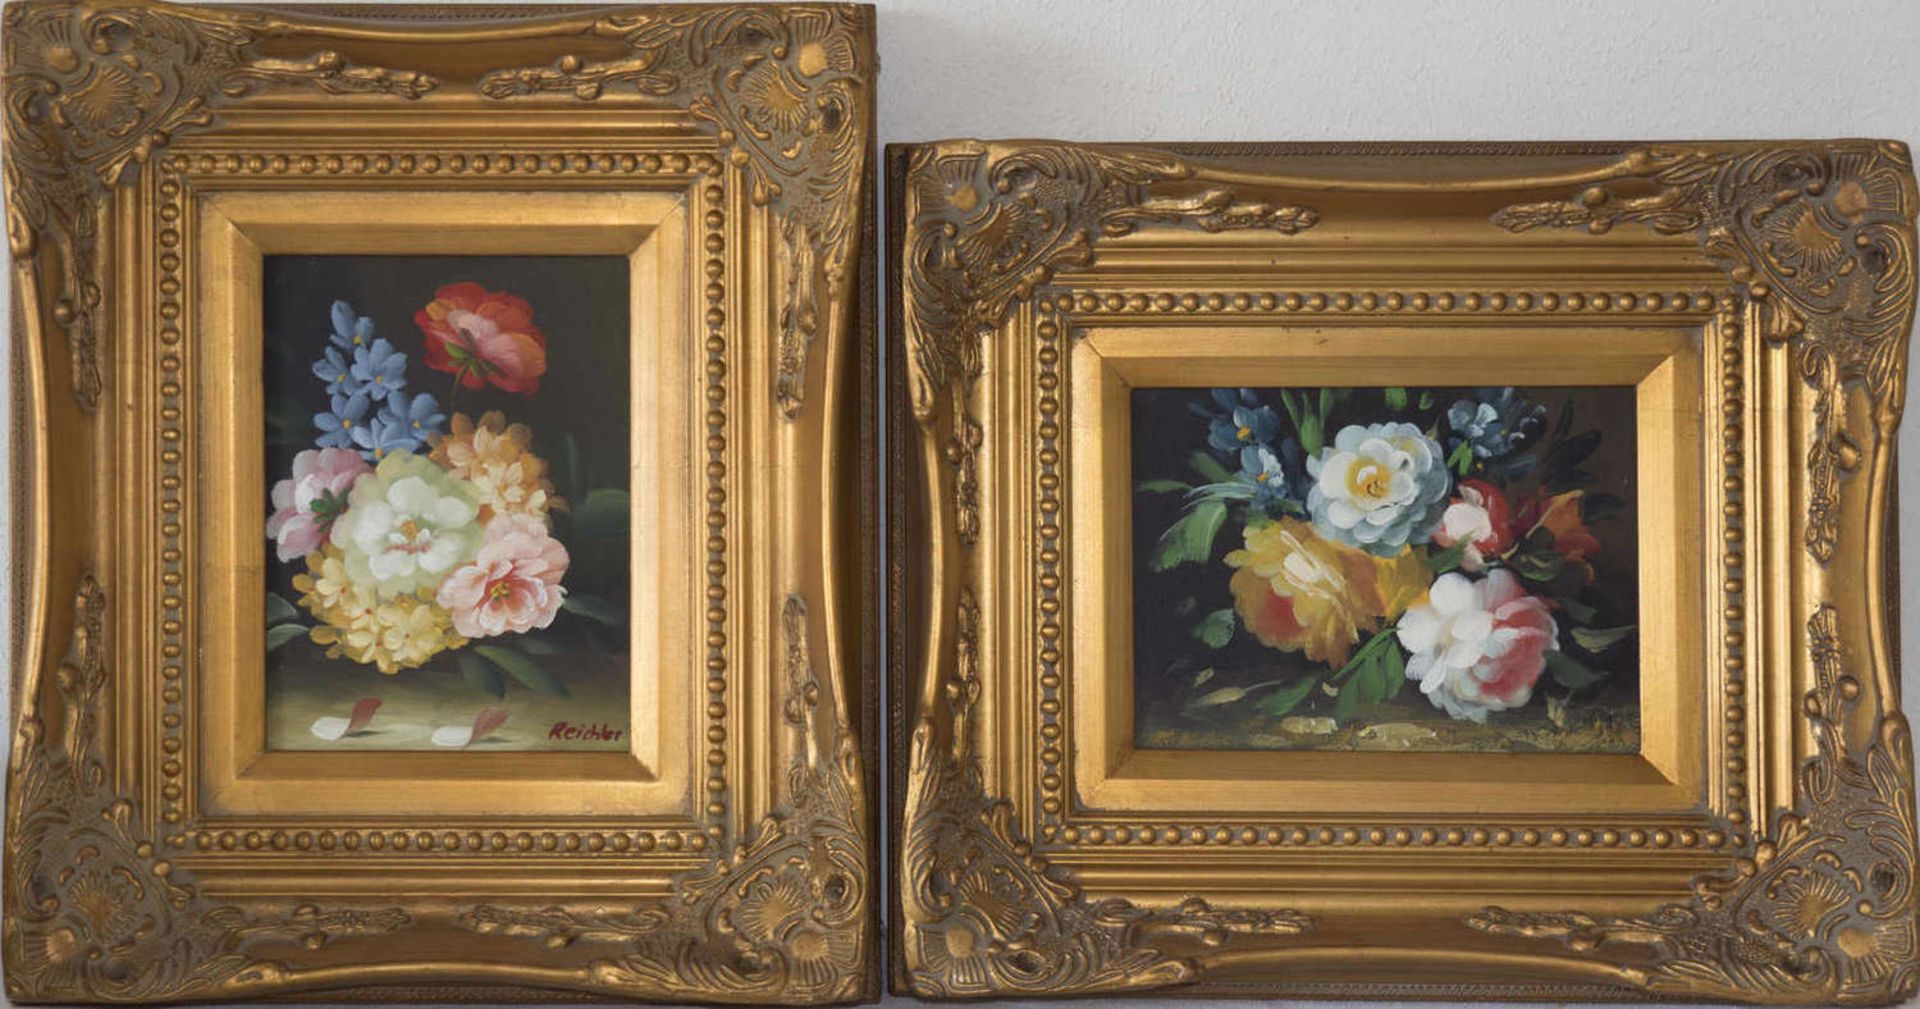 Zwei Blumen - Stillleben, im Gold - Stuckrahmen. Maße: ca. 27,5 cm x ca. 27 cm. Ein Bild signiert.